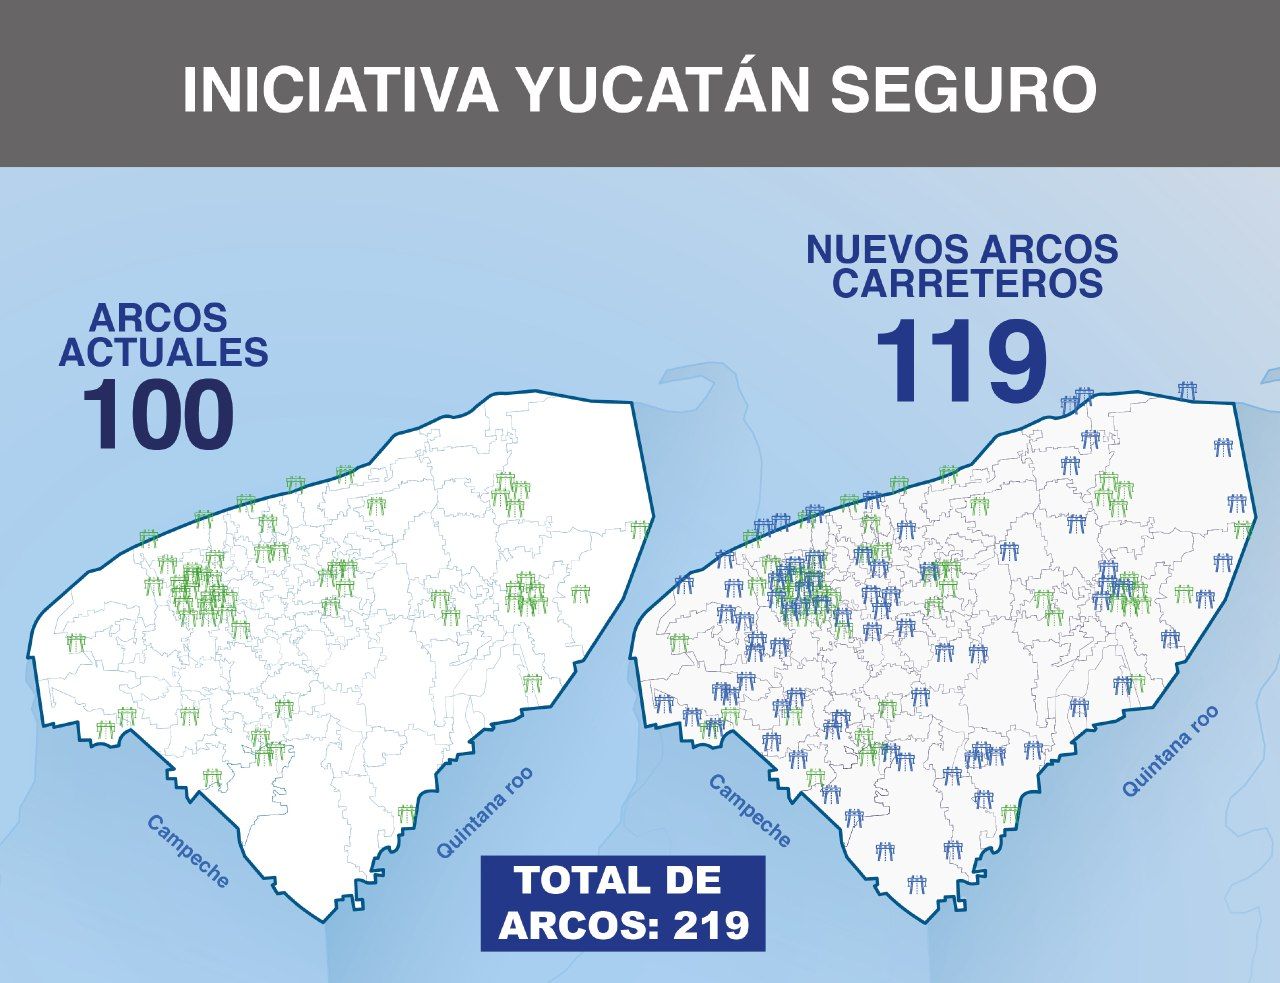 Photo of Las fronteras del Estado y las entradas y salidas de los municipios, protegidos con la iniciativa “Yucatán Seguro”